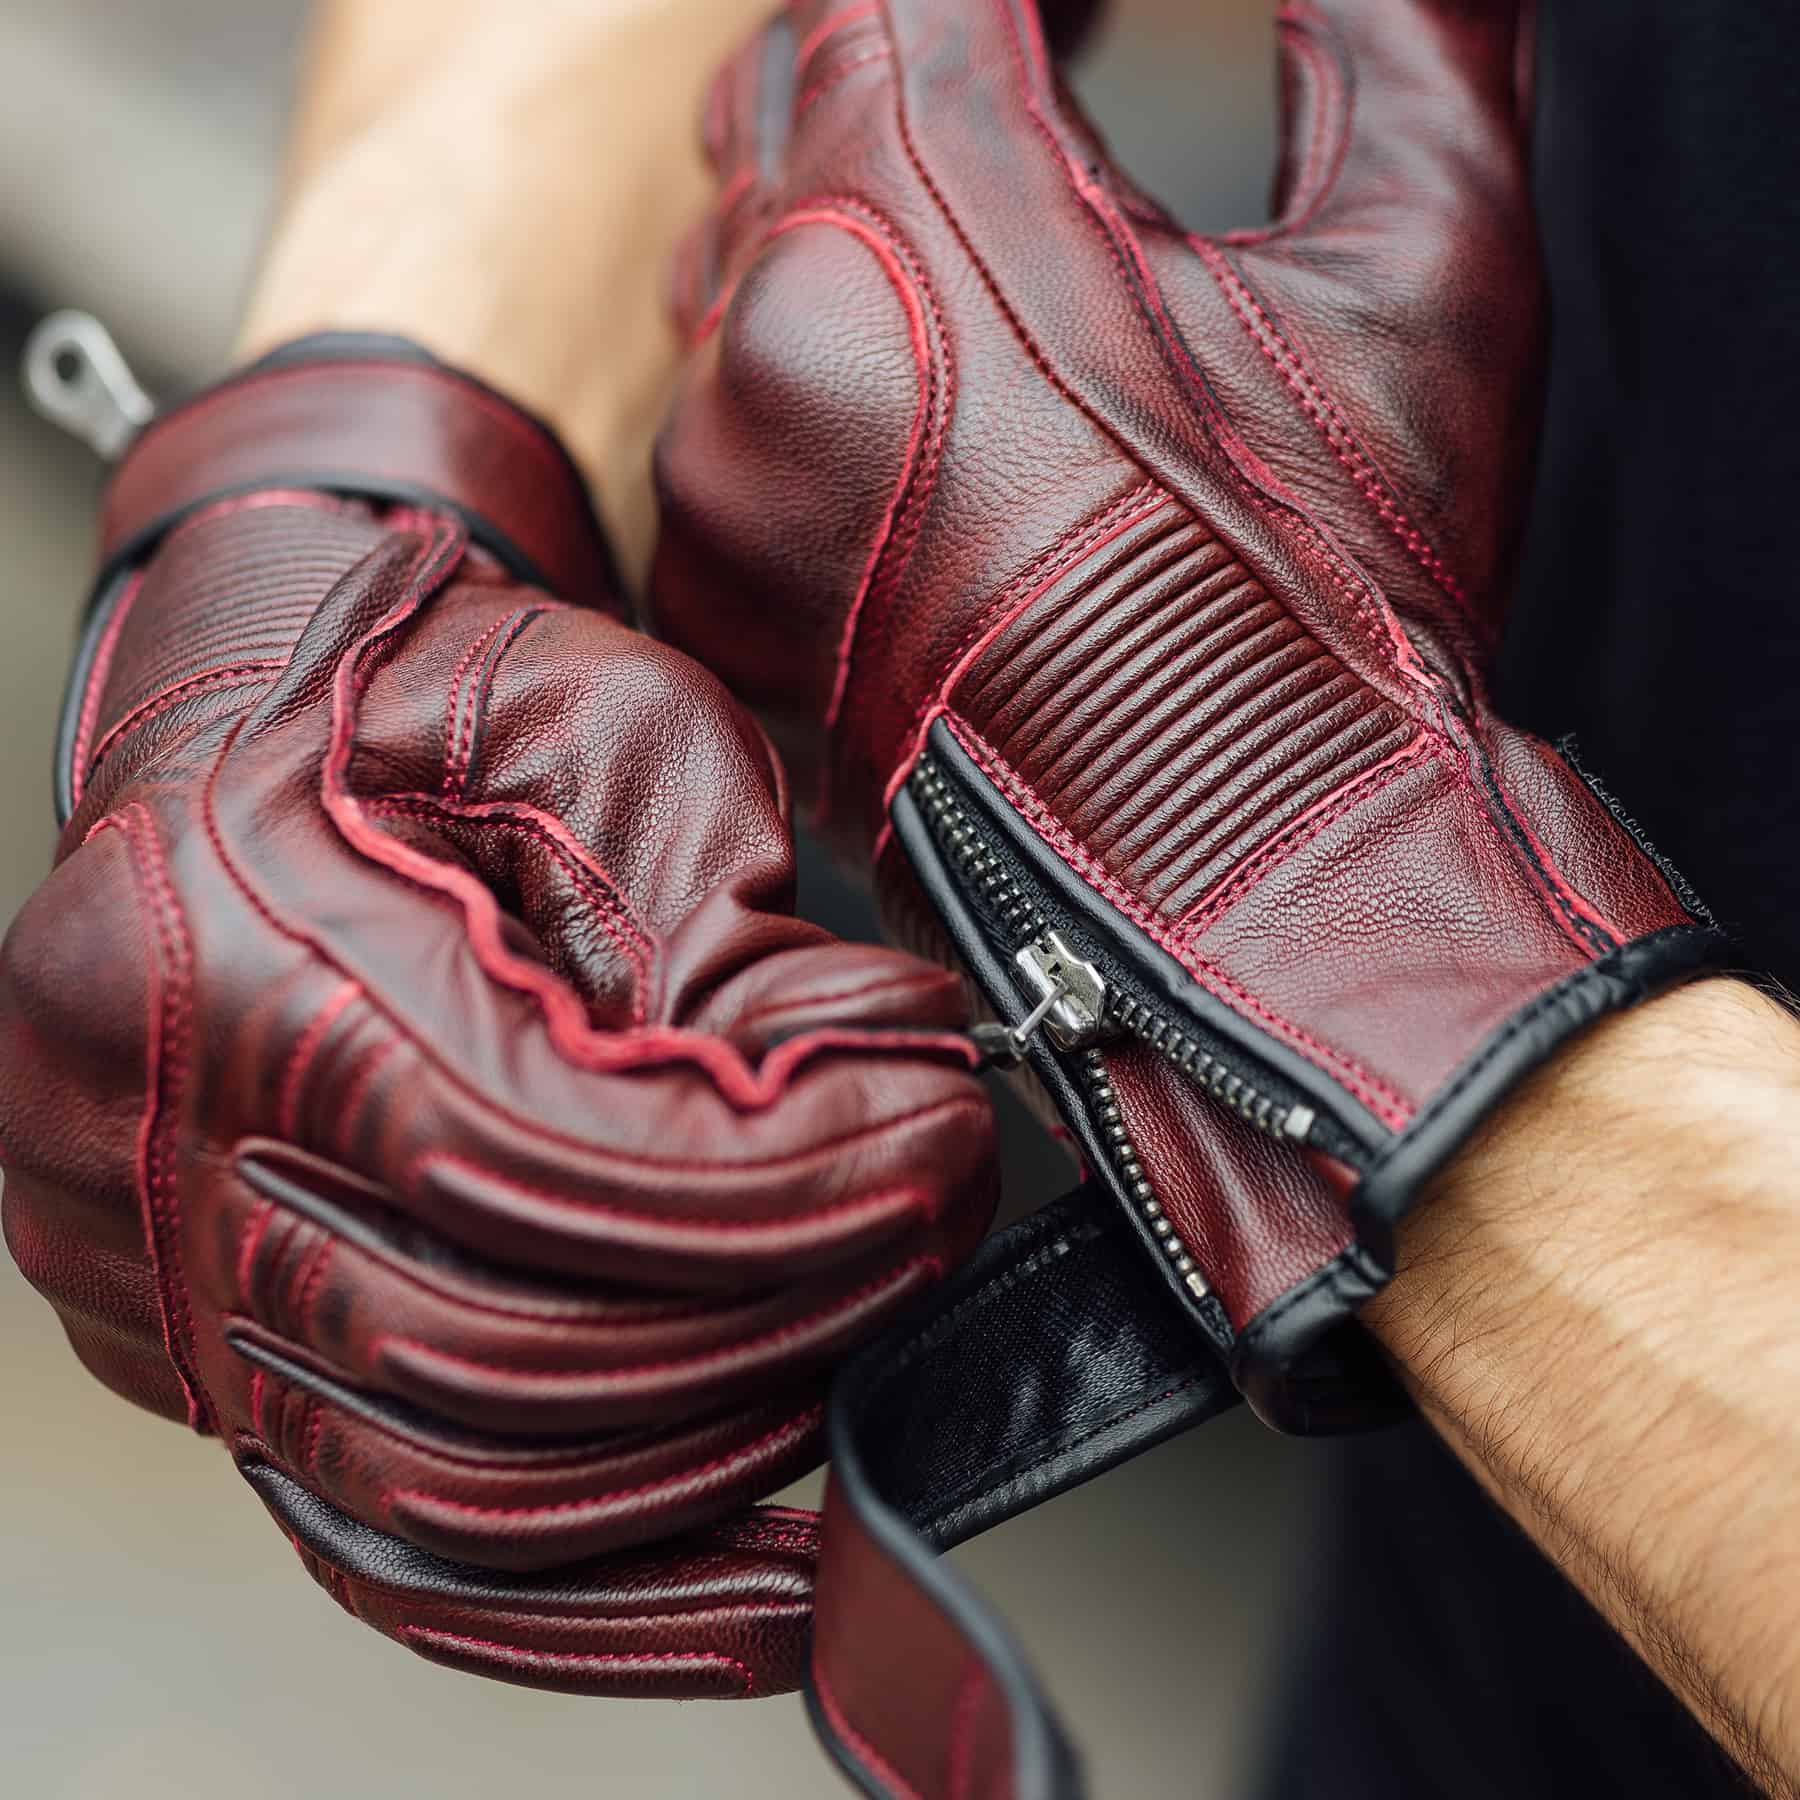 Merlin glory glove in oxblood